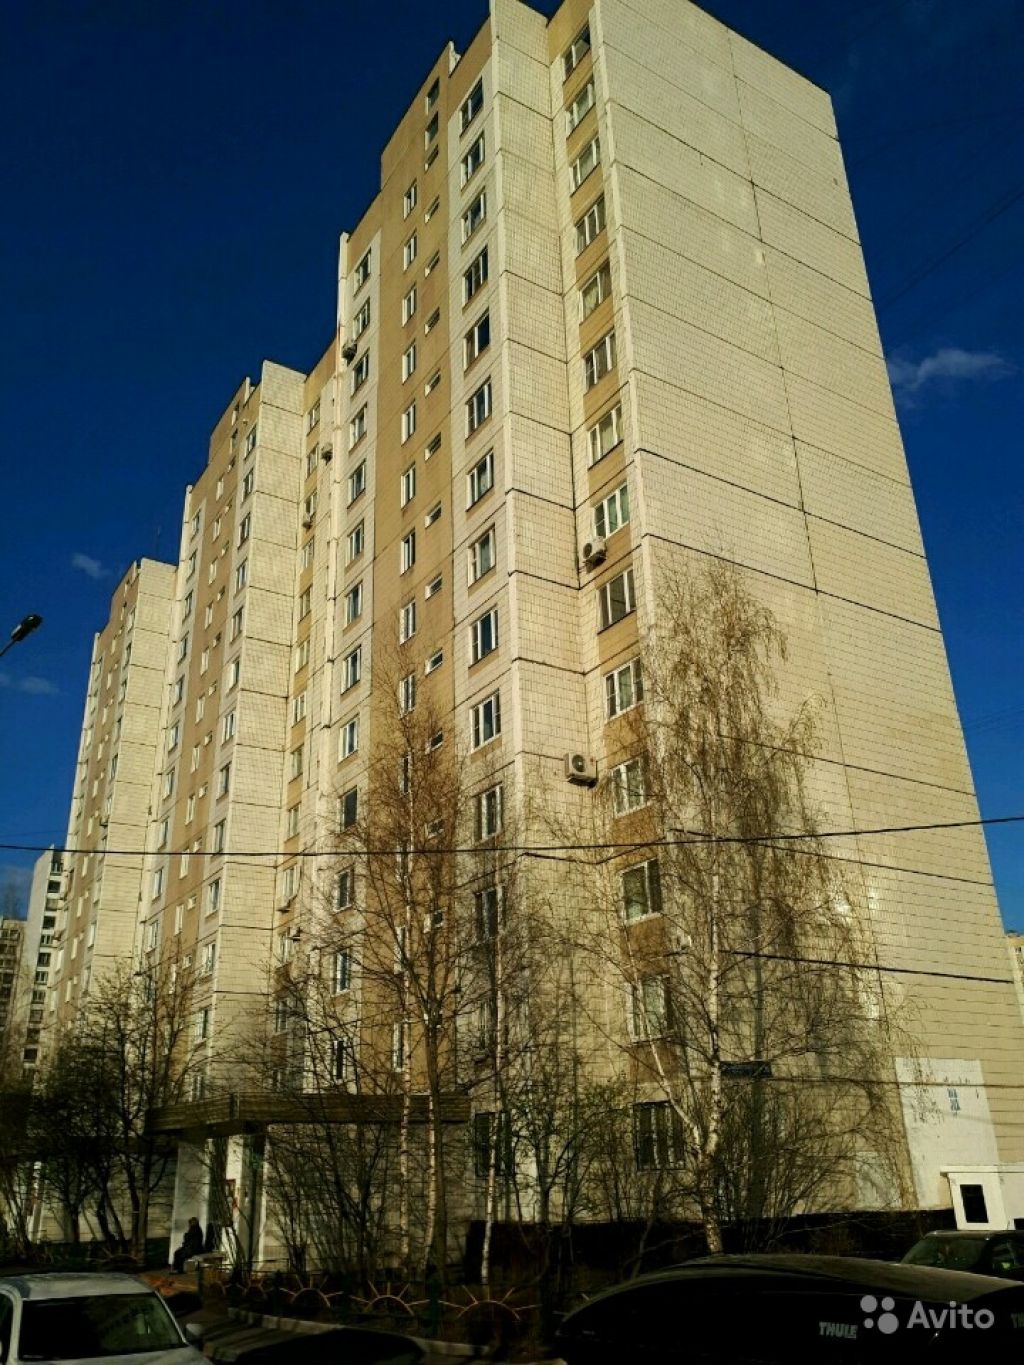 Сдам квартиру 3-к квартира 75 м² на 7 этаже 16-этажного панельного дома в Москве. Фото 1